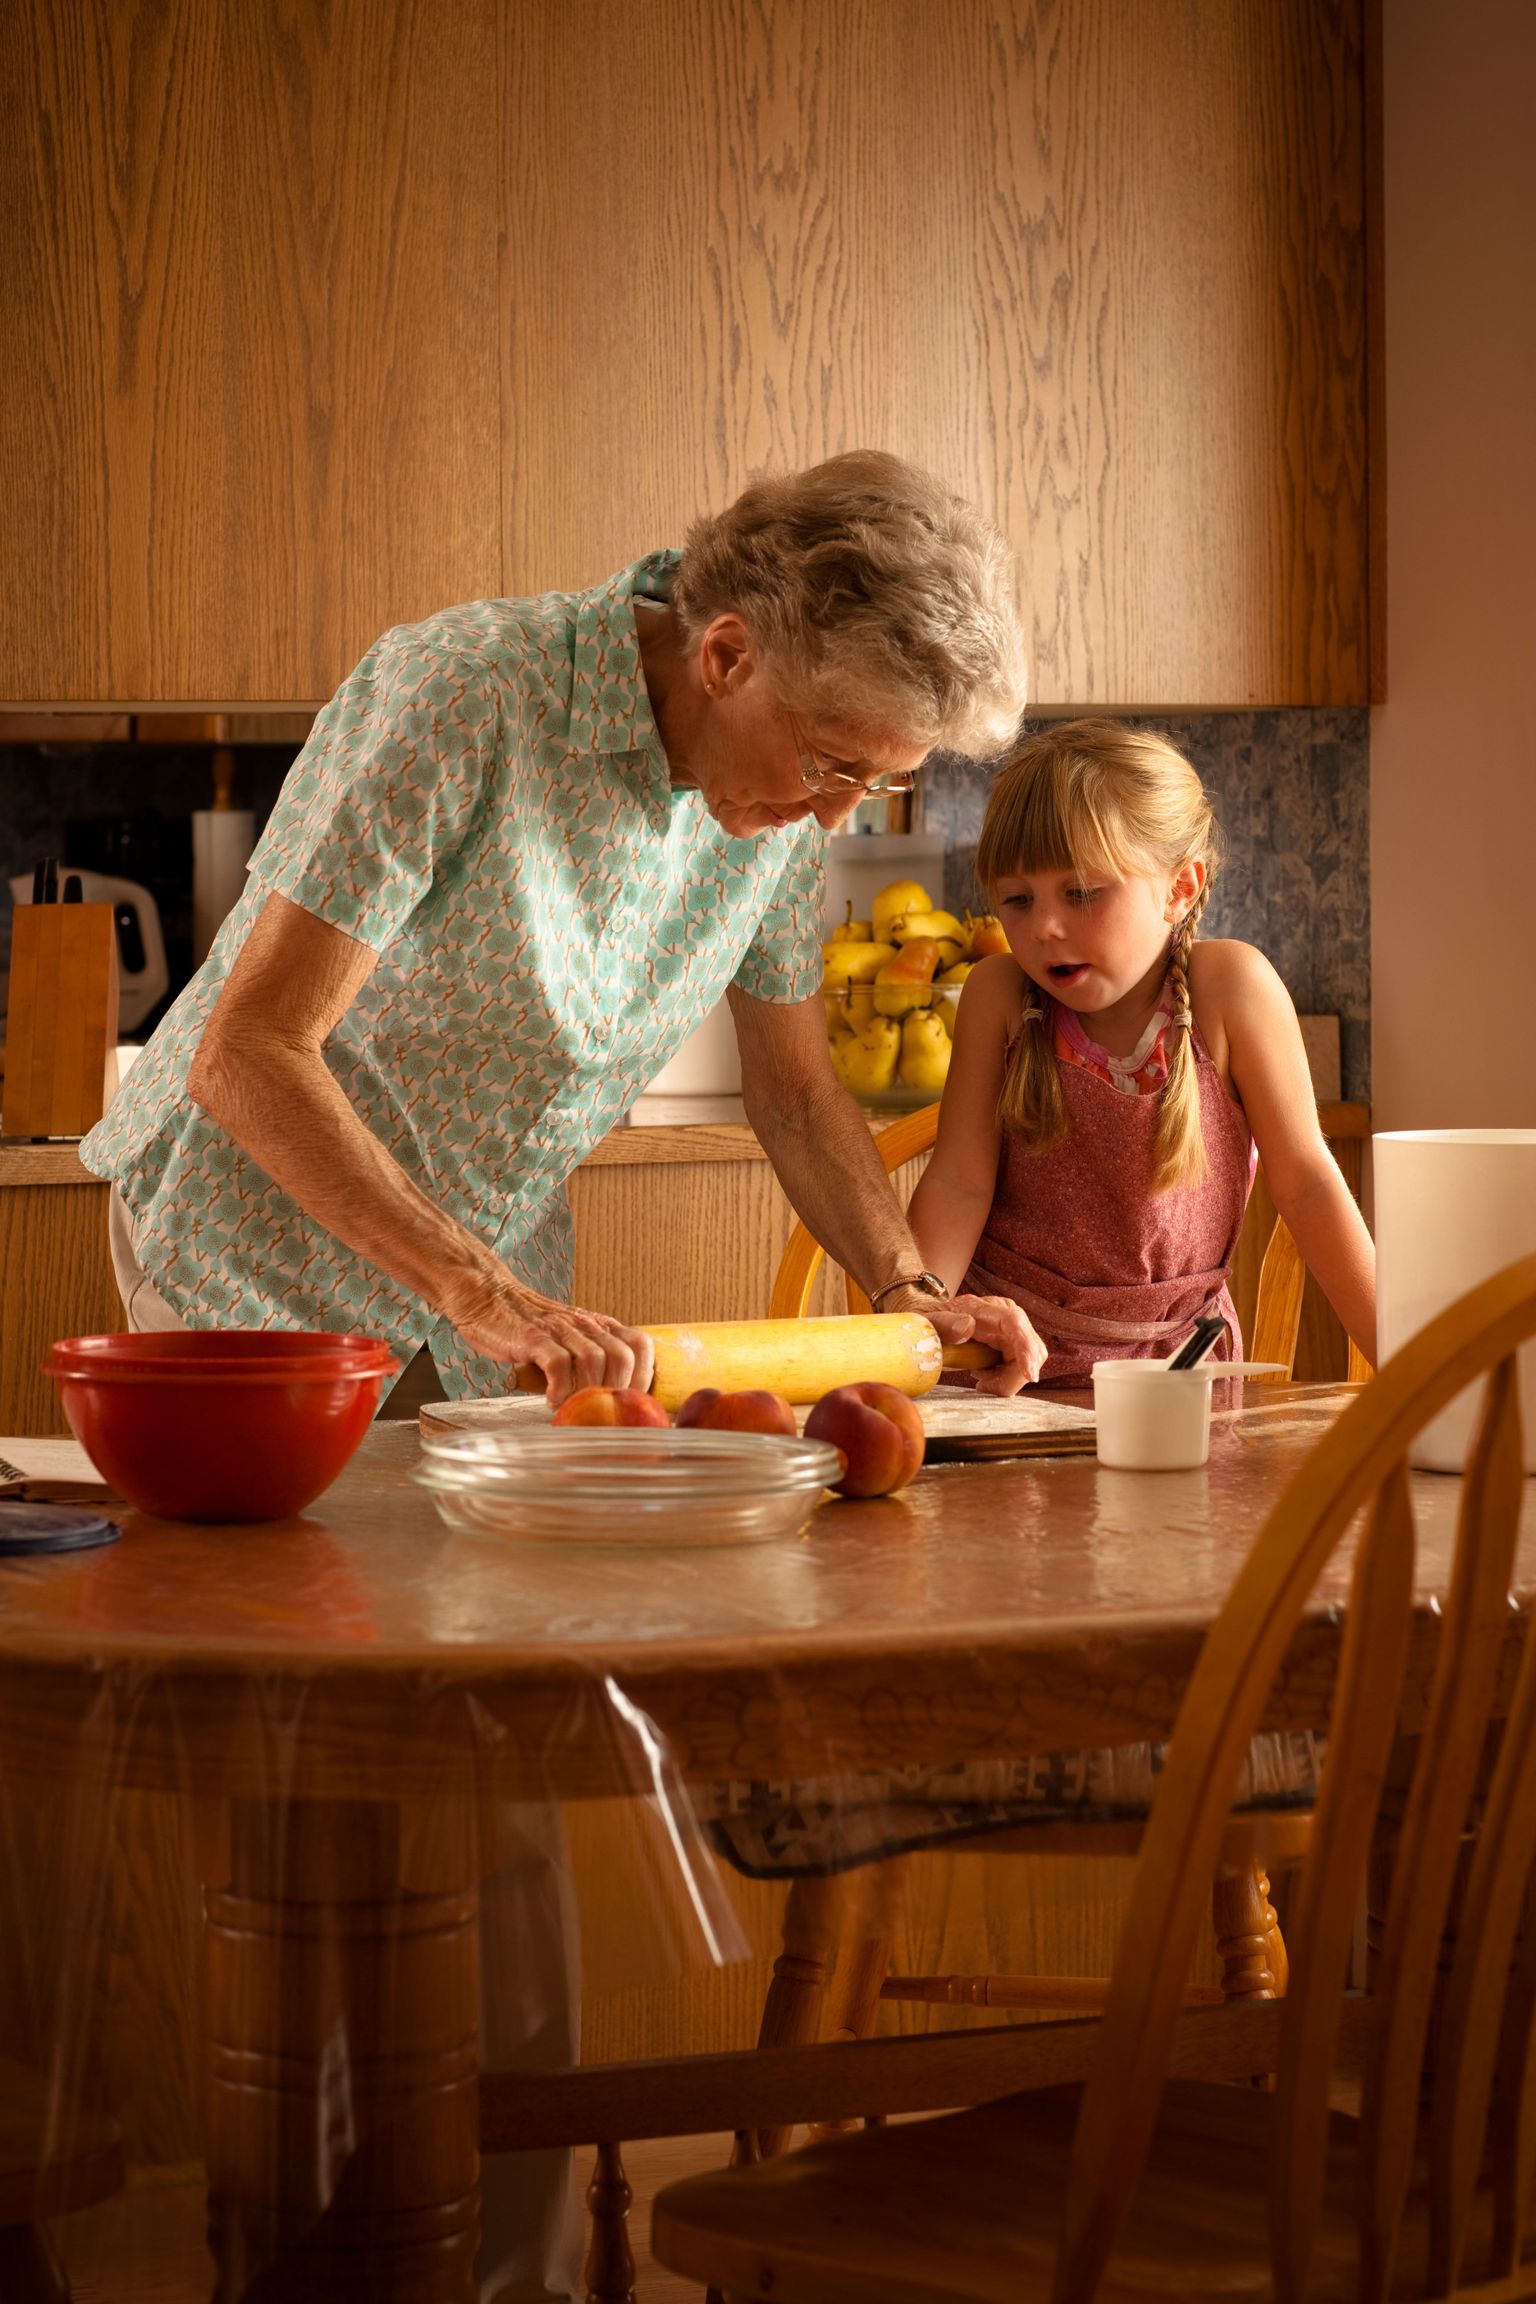 Vanavanematega on tore igasuguseid asju koos teha ja koos näiteks uusi oskusi õppida. Kui aga koduseinte vahelt väliüritusele minna, on kasulik mõned näpunäited meelde jätta.